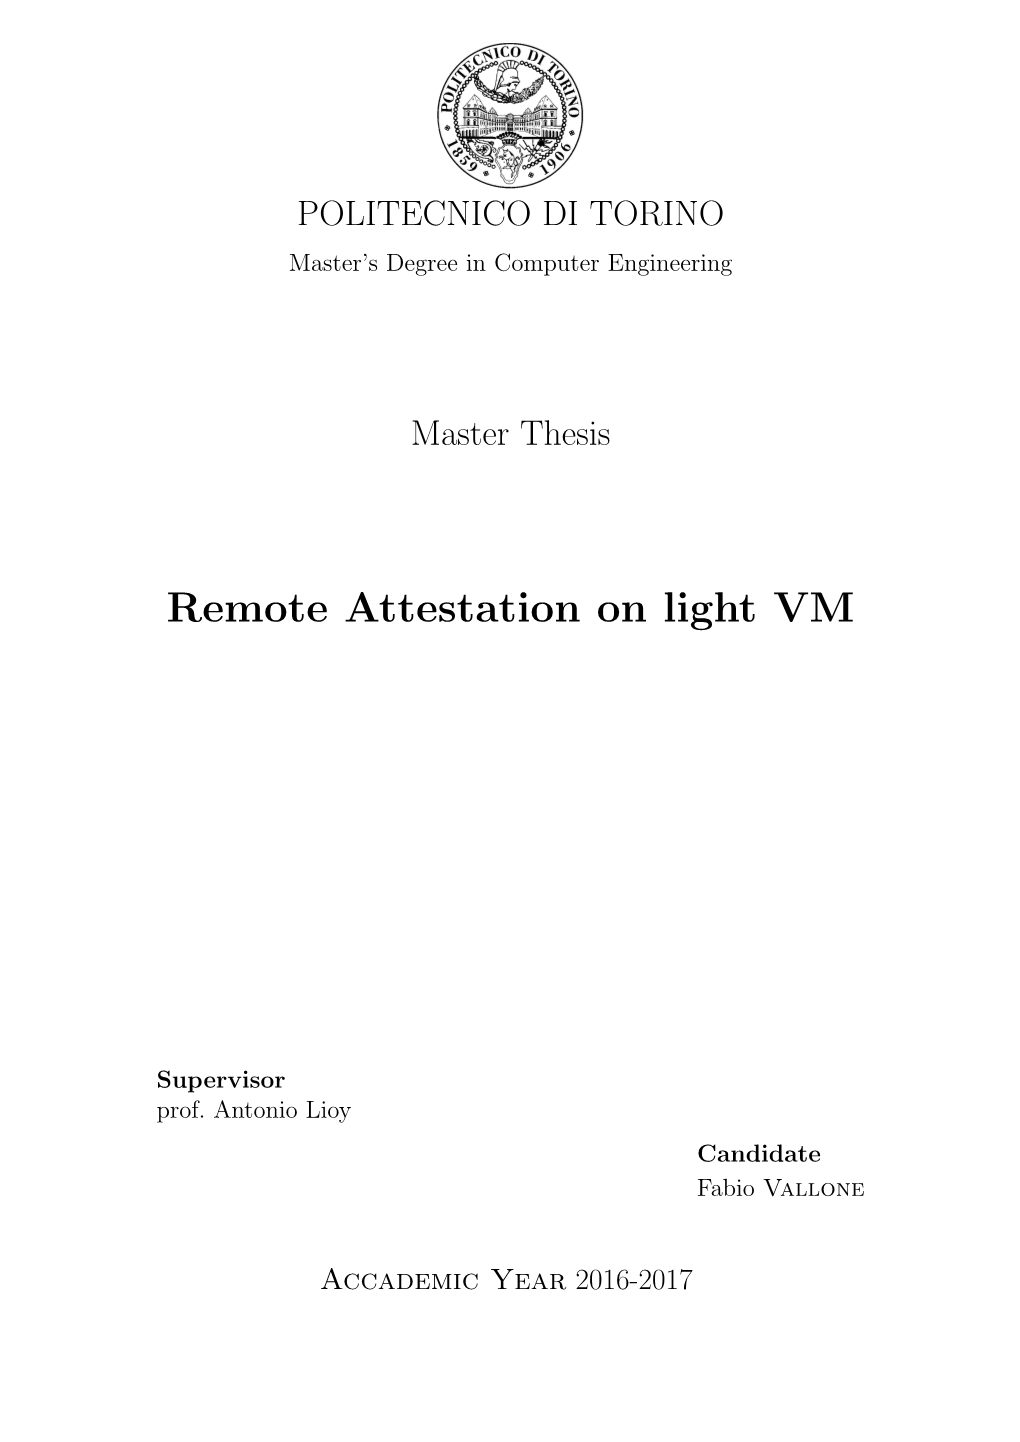 Remote Attestation on Light VM